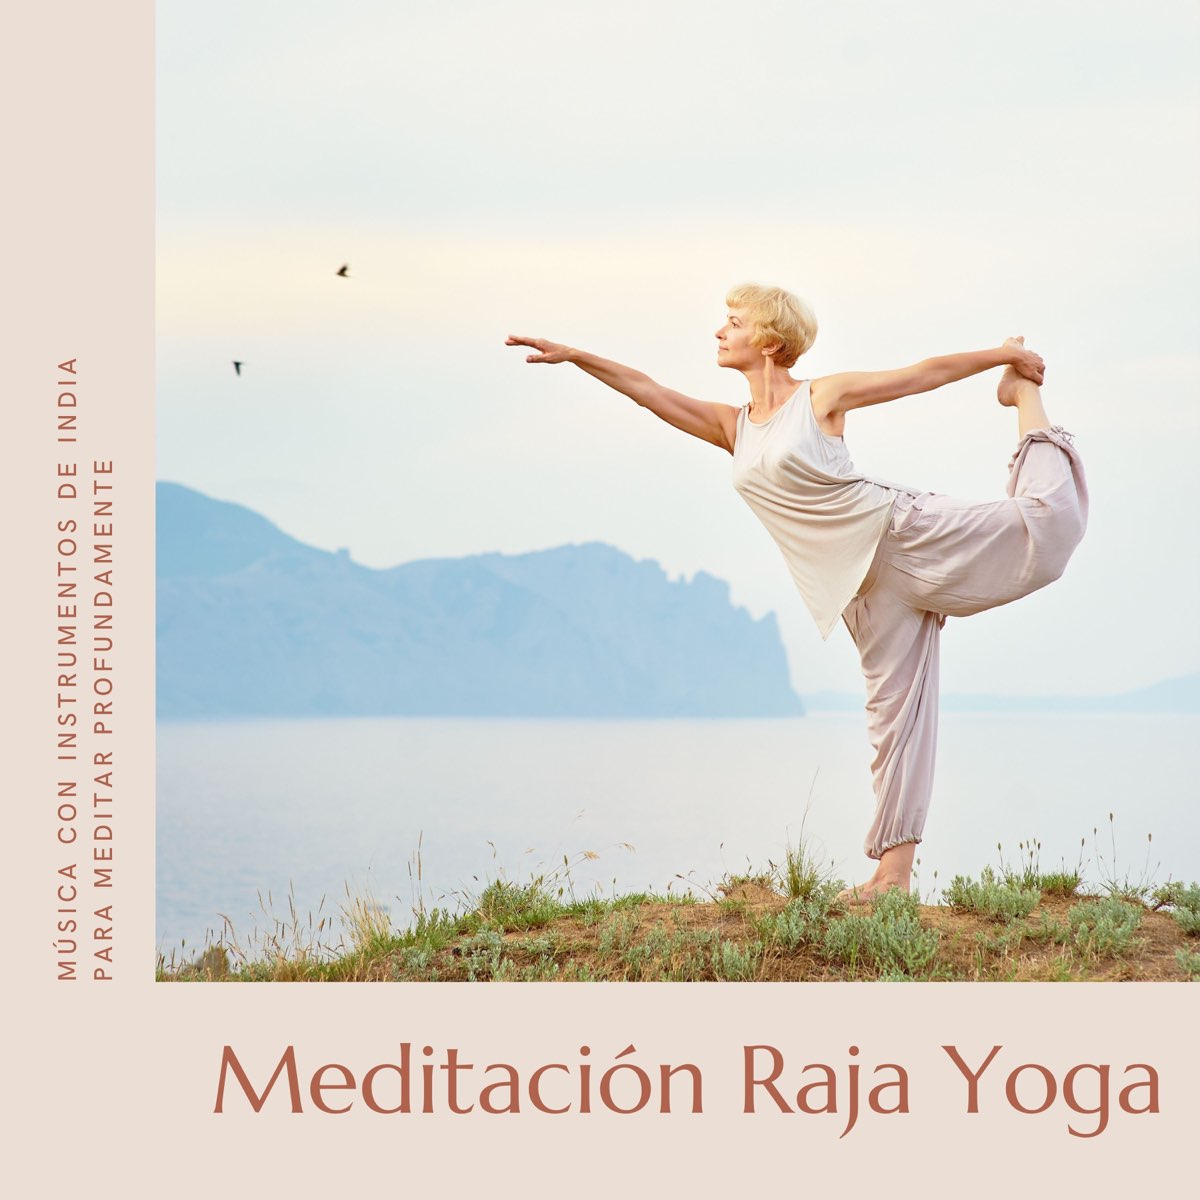 Meditación Raja Yoga - Música con Instrumentos de India para Meditar  Profundamente - Album by El Mundo Yoga - Apple Music